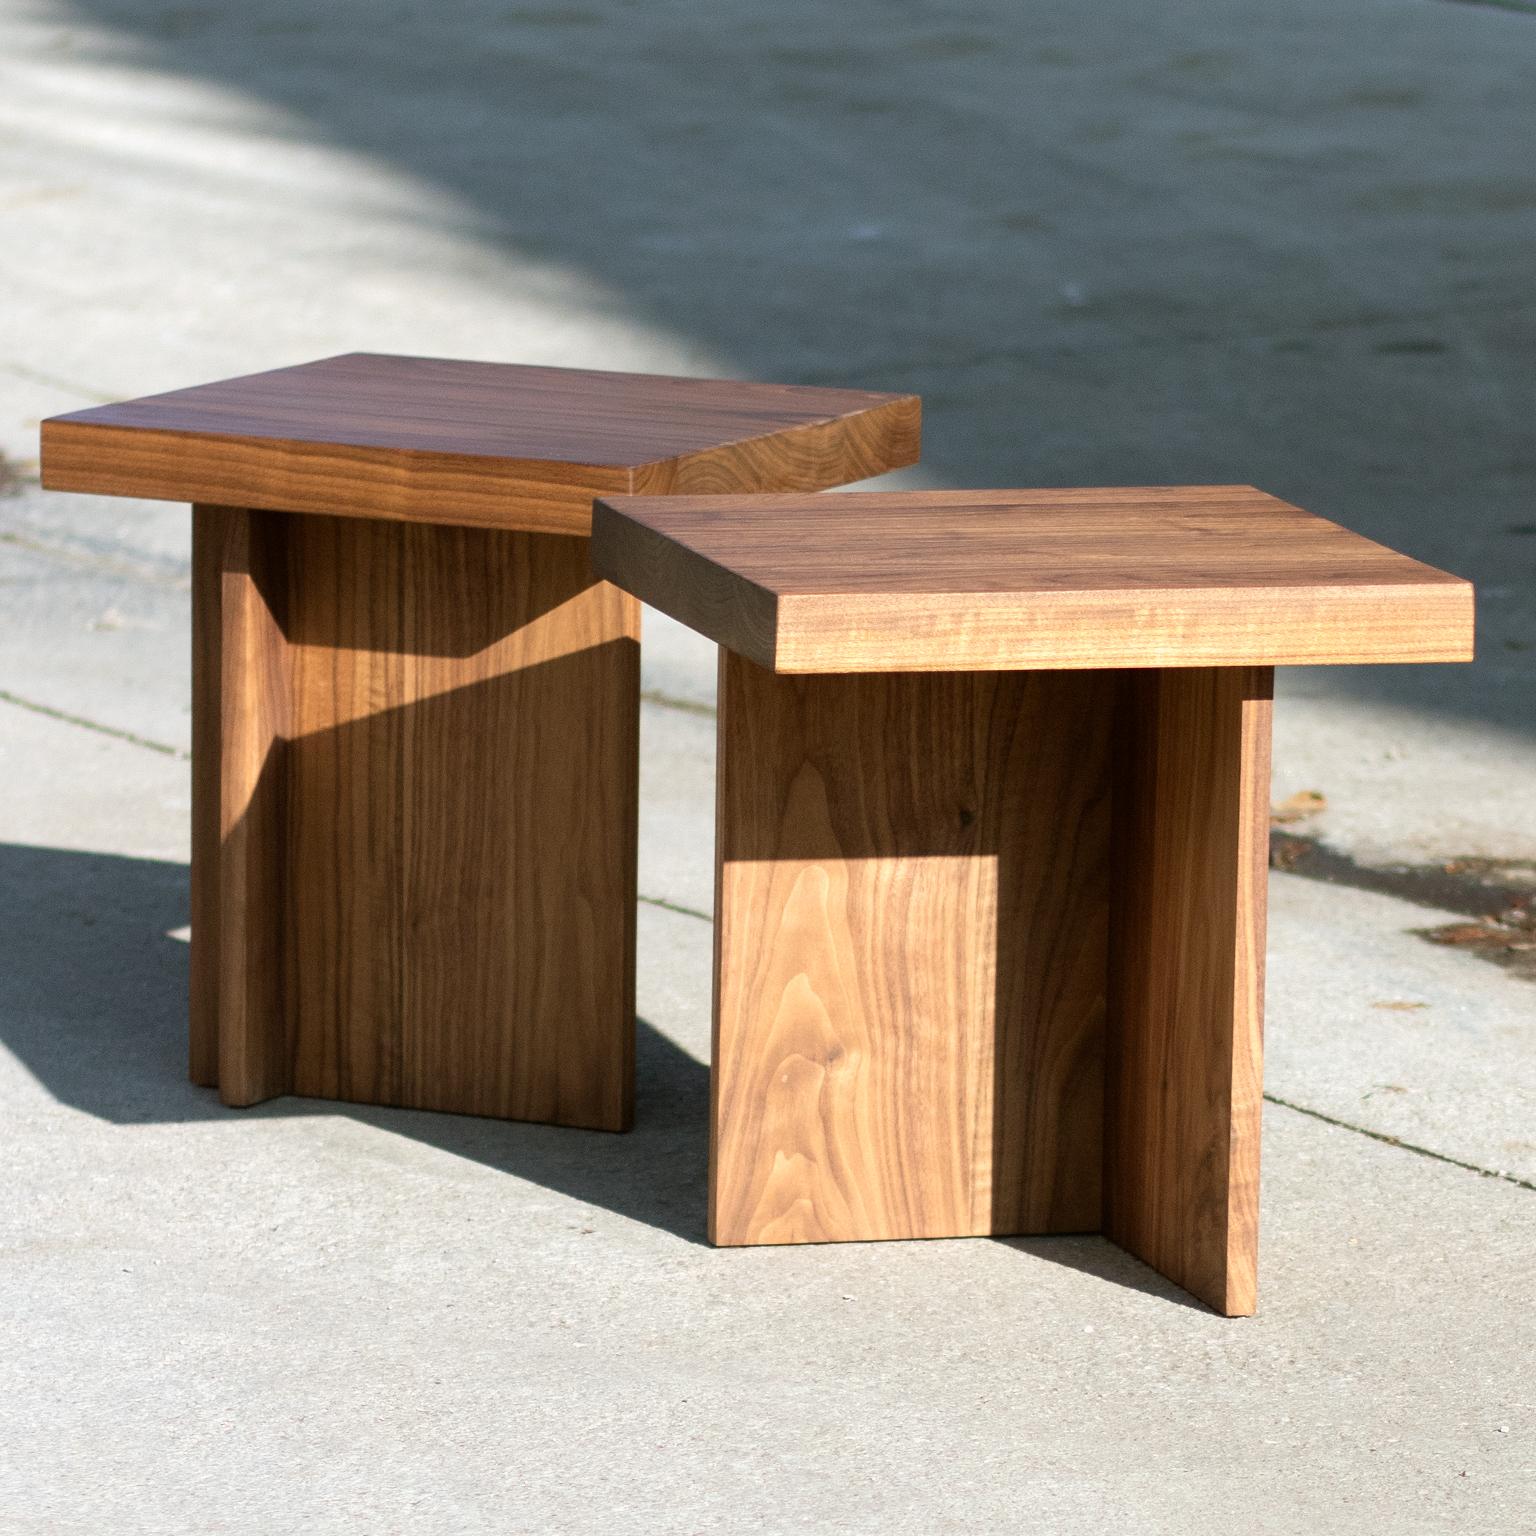 Il s'agit d'une table d'appoint ou d'un petit tabouret en noyer massif. Le profil est asymétrique et architectural tout en célébrant les éléments naturels du bois. 

Personnalisable.